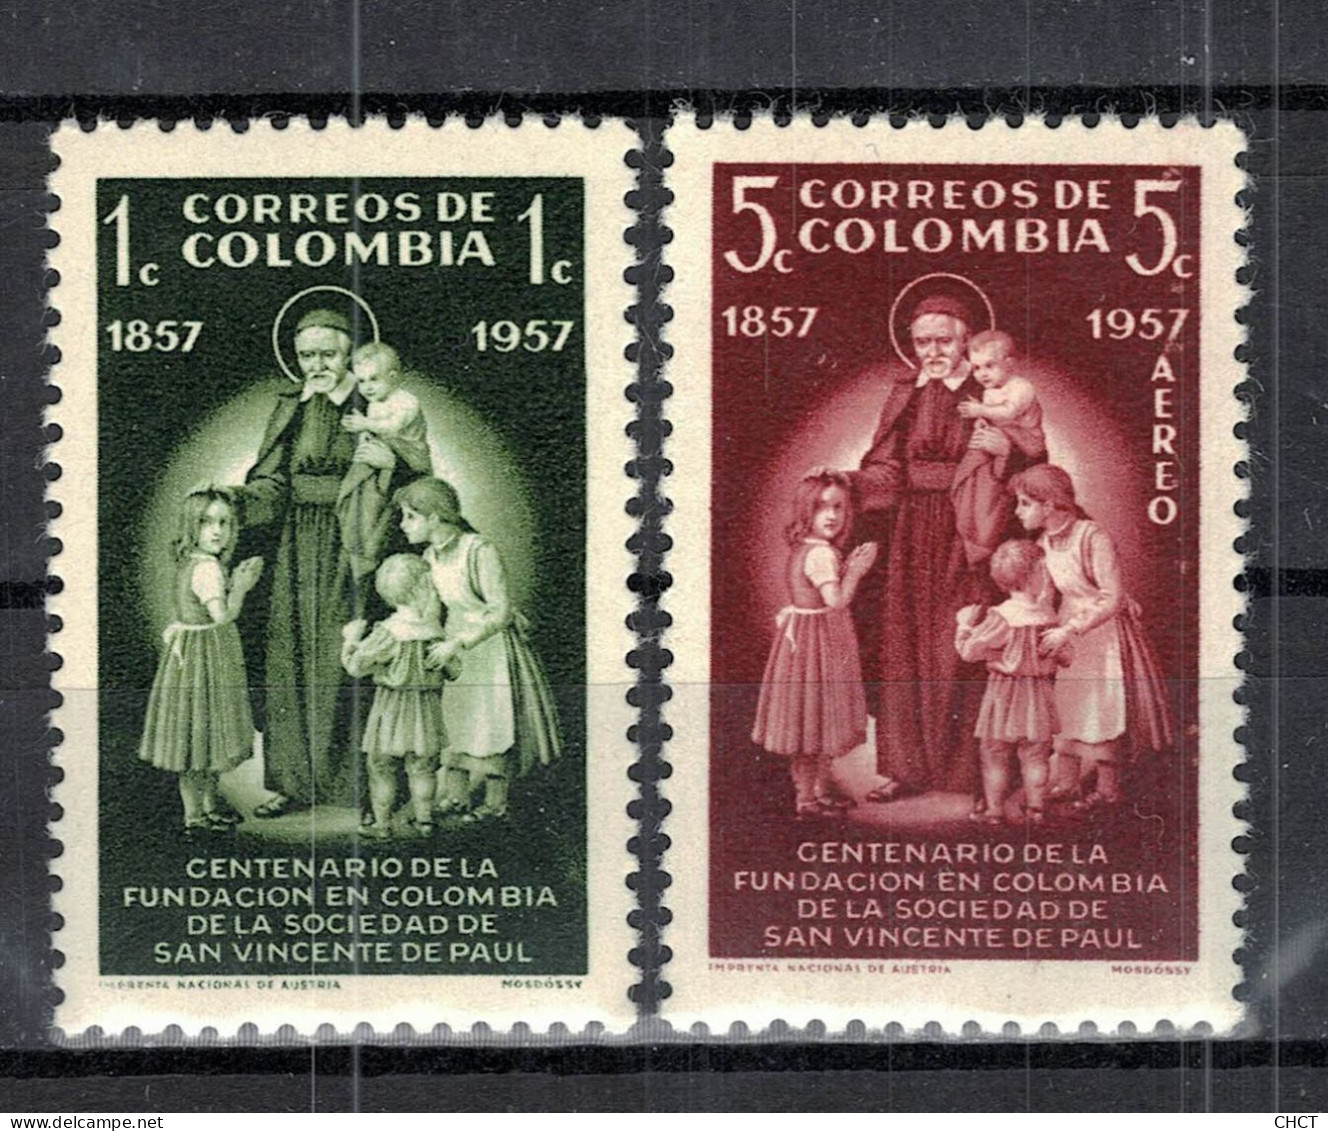 CHCT85 - Saint Vindent De Paul Centenary Commemoration, Complete Series, MH, 1957, Colombia - Colombie